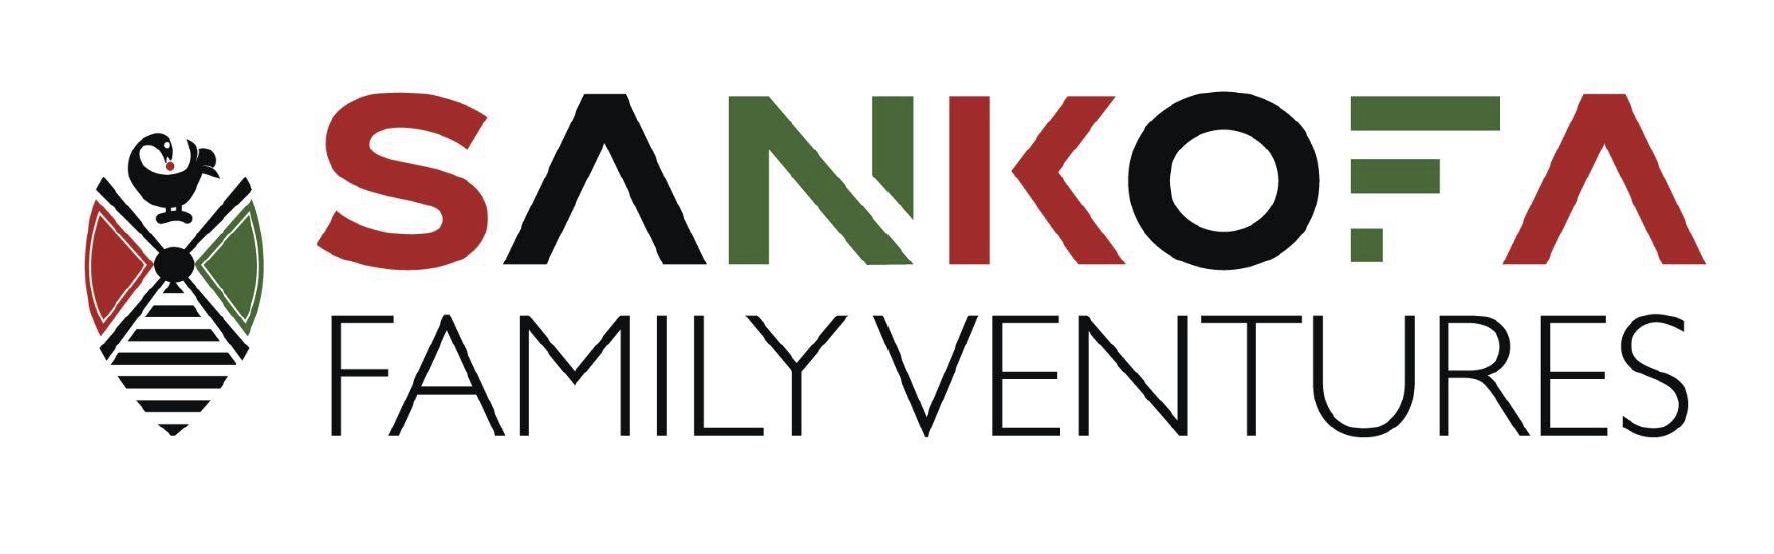 Sankofa Family Ventures